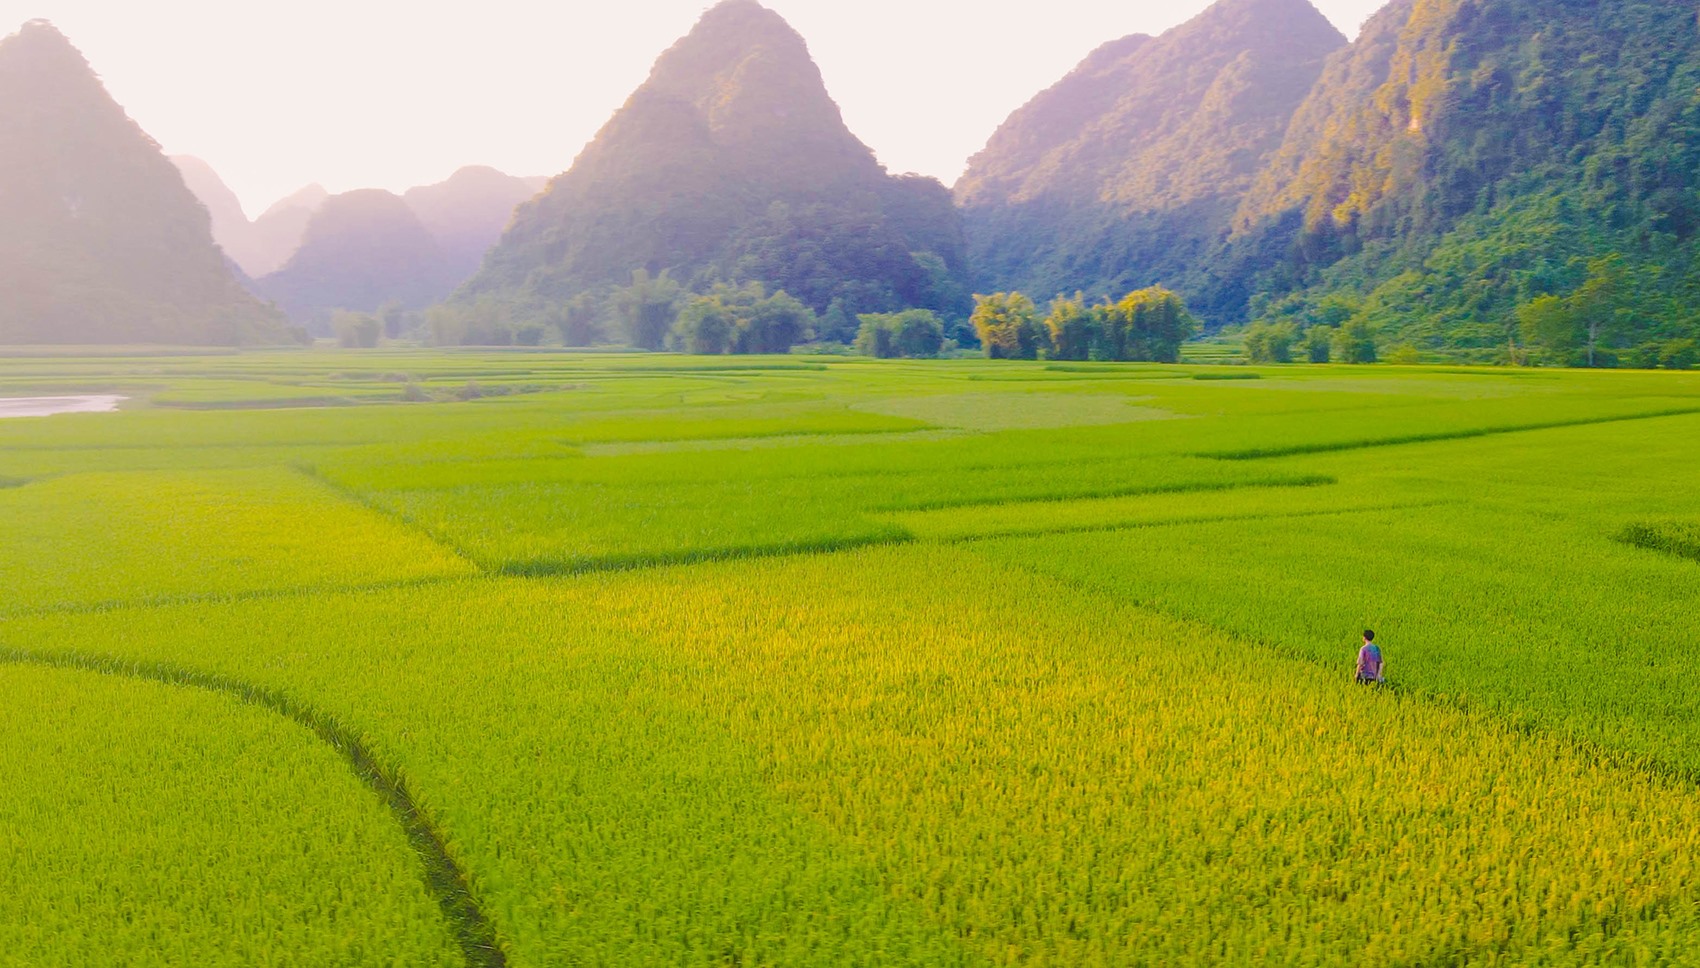 Thung lũng Phong Nậm đang bắt đầu vào mùa lúa chuyển màu